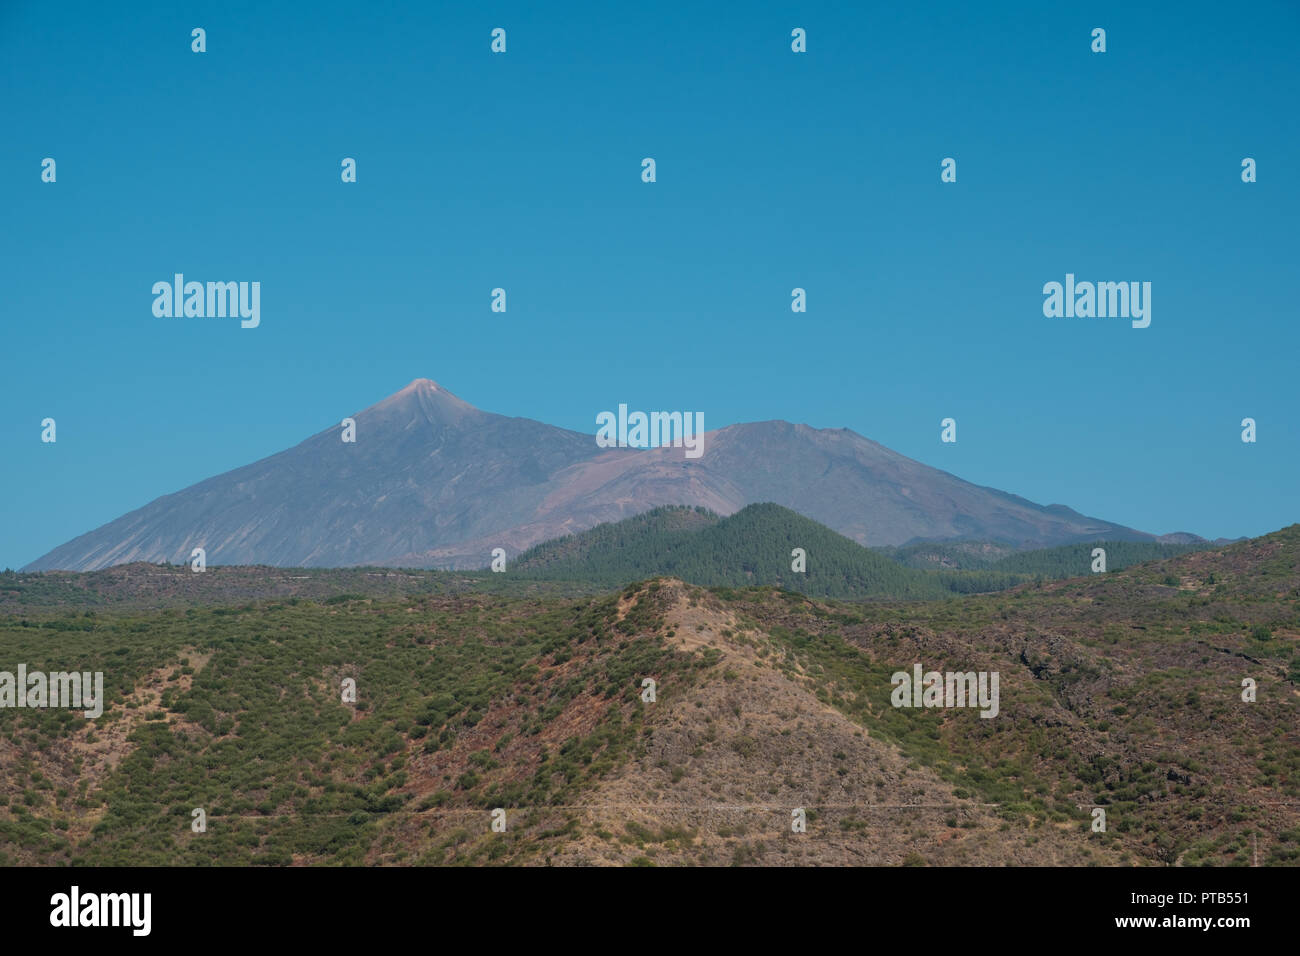 Sommer Landschaft mit klaren, blauen Himmel und Berg (Pico del Teide) Hintergrund - Stockfoto